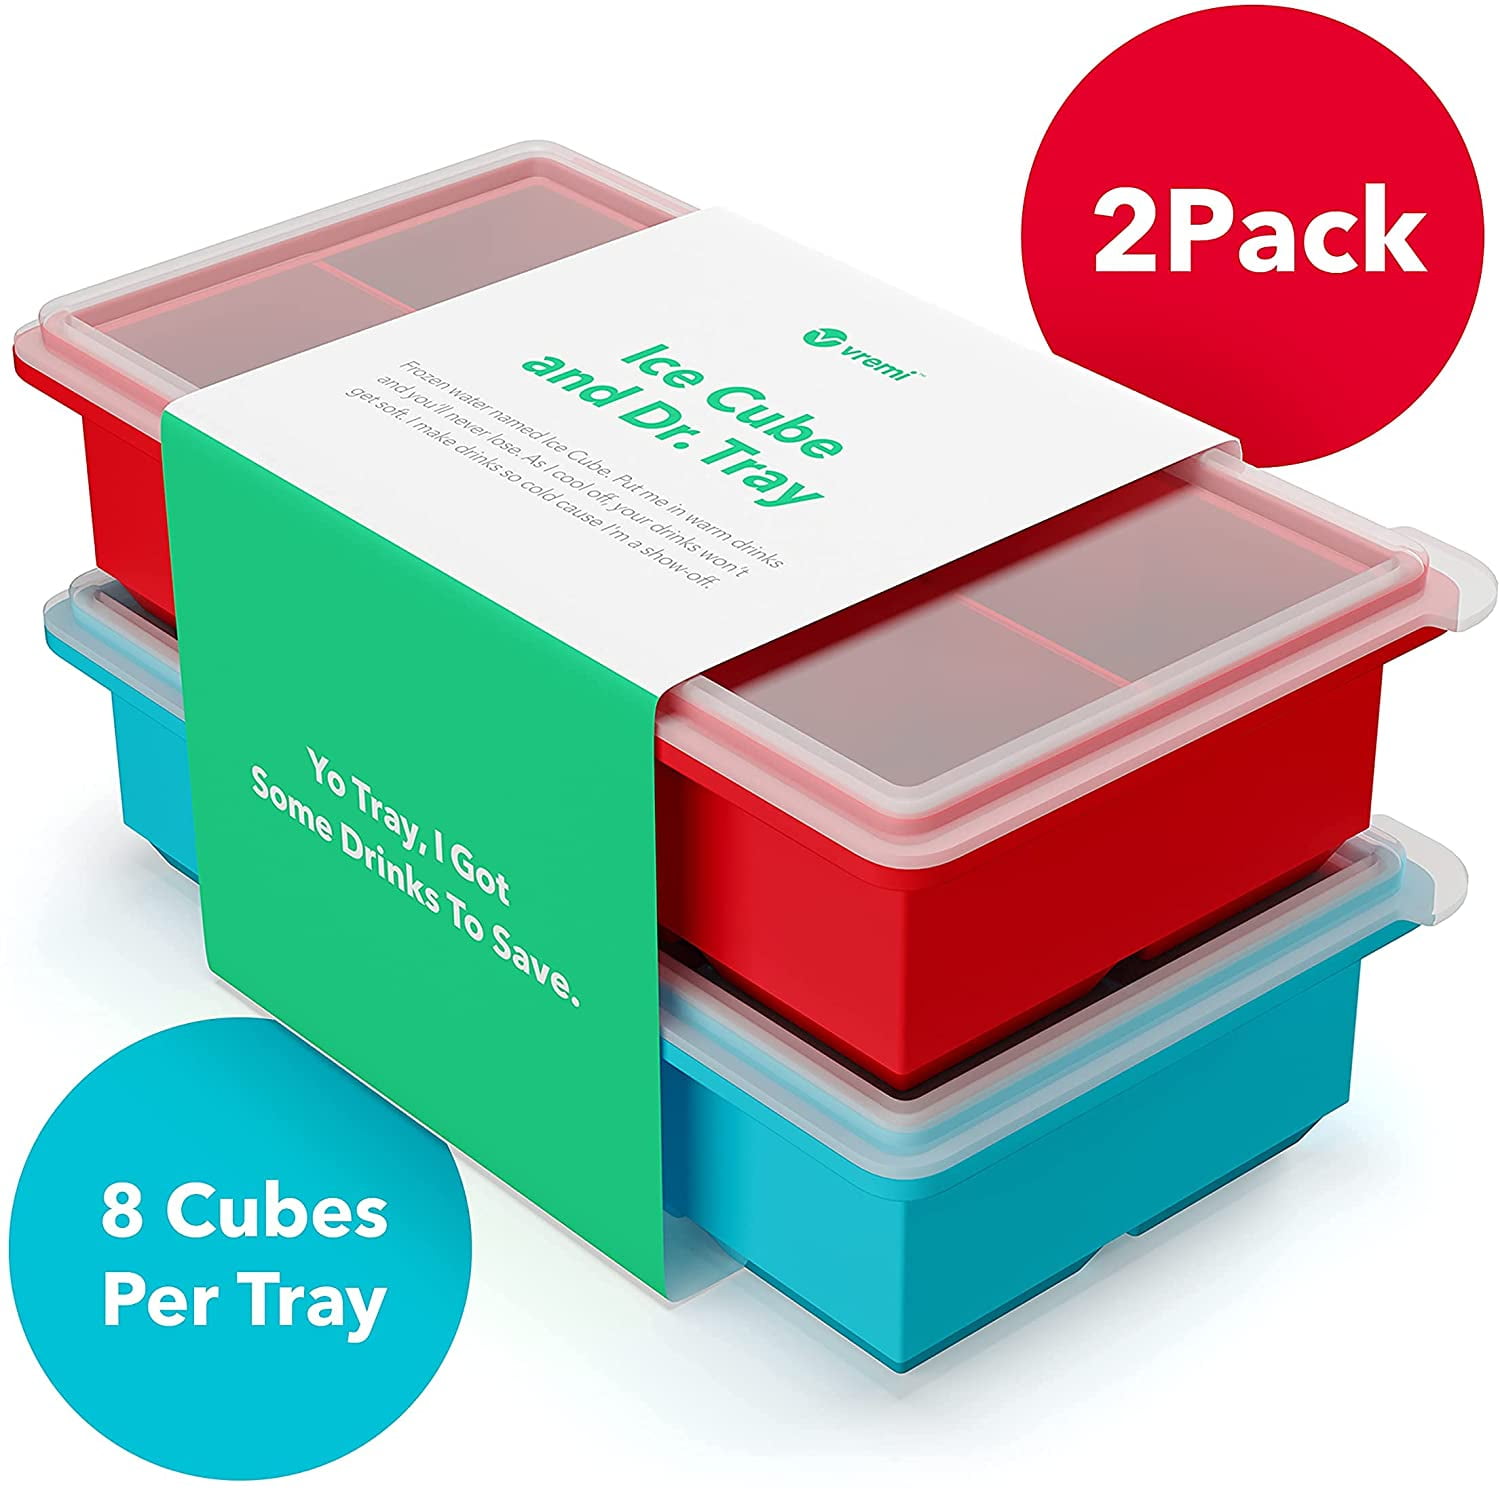 Handy Housewares 2 Jumbo Silicone Push Ice Cube Tray - Makes 8 Large